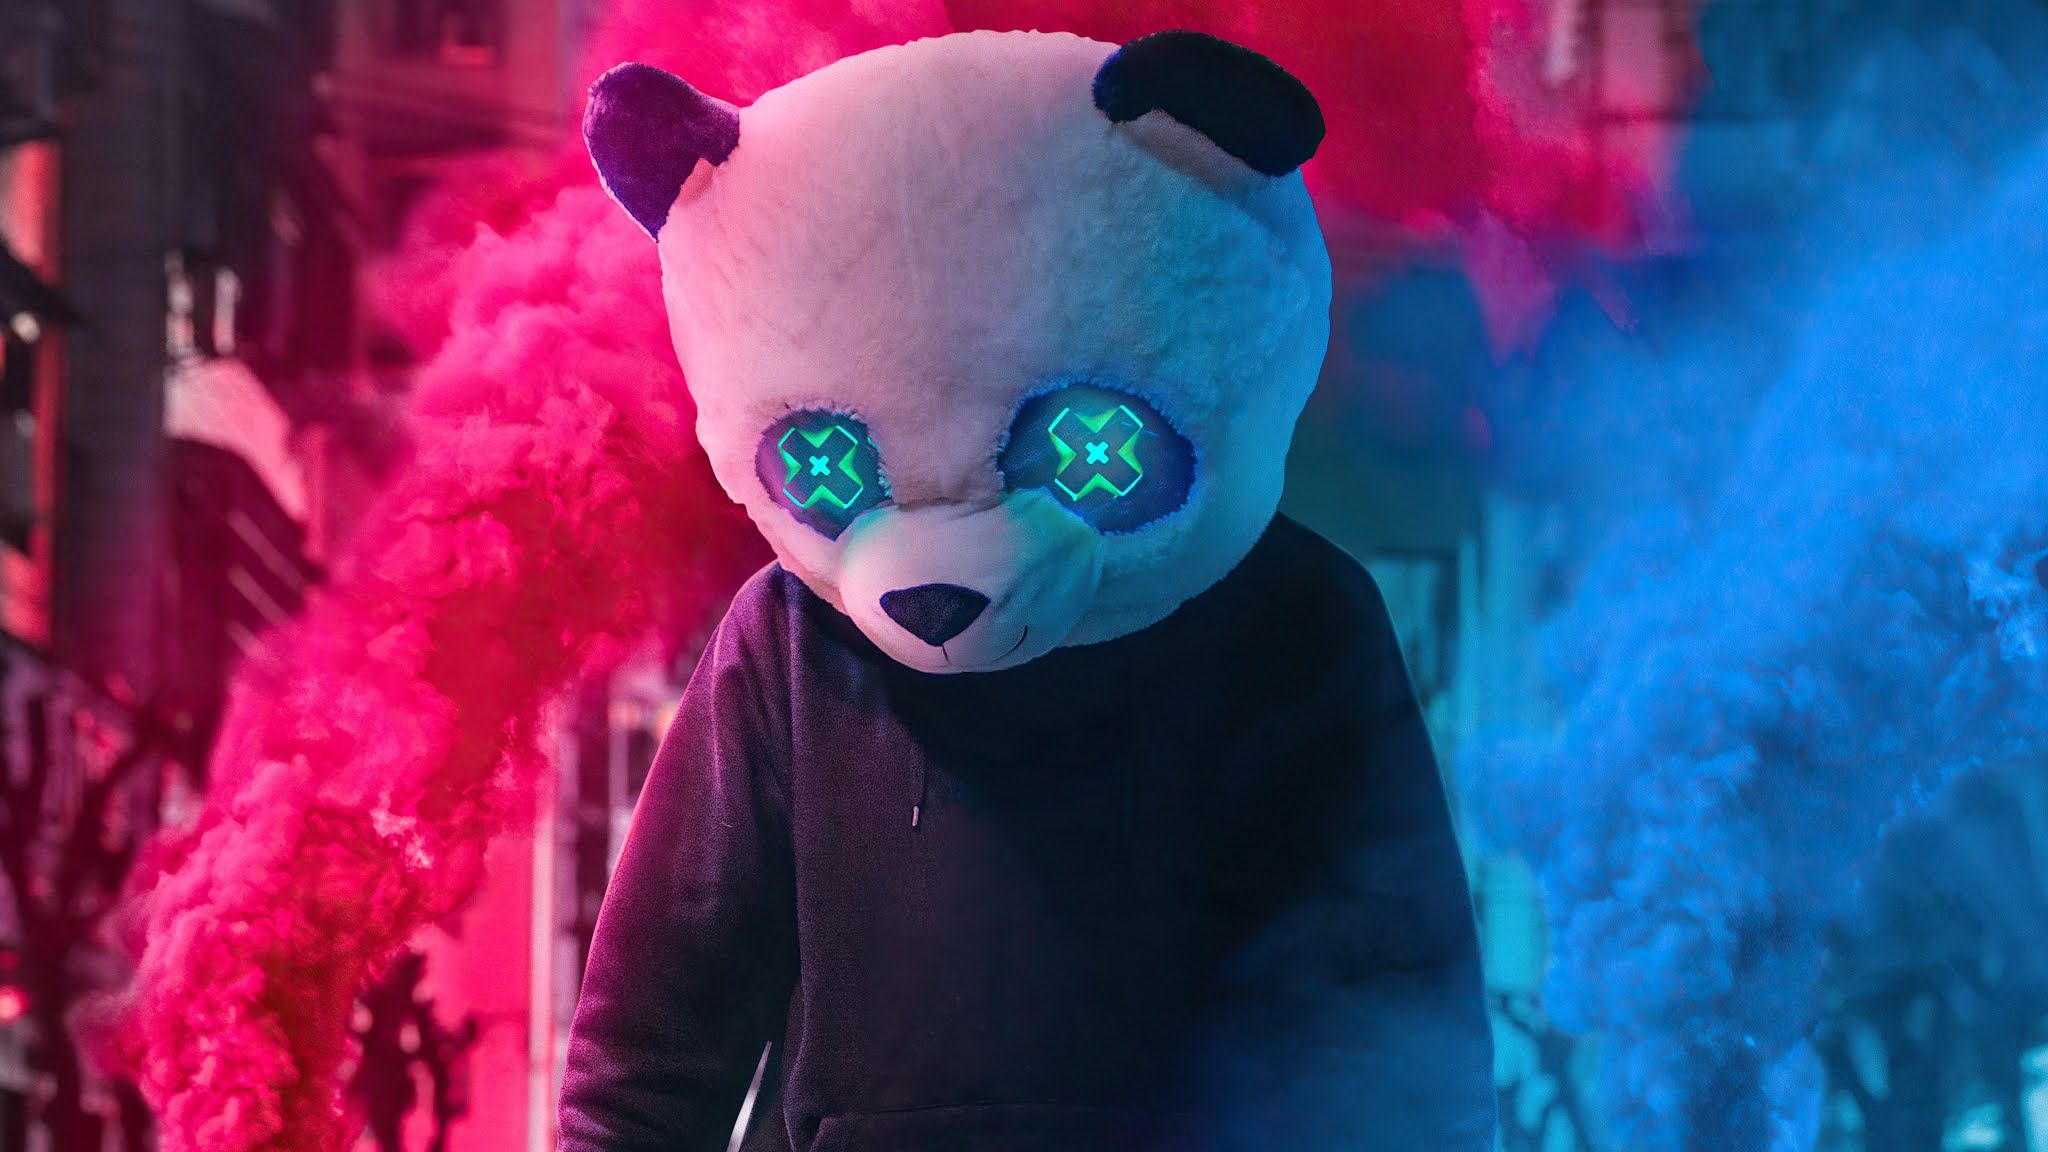 Panda Mask, Neon, Pink, Blue, Smoke